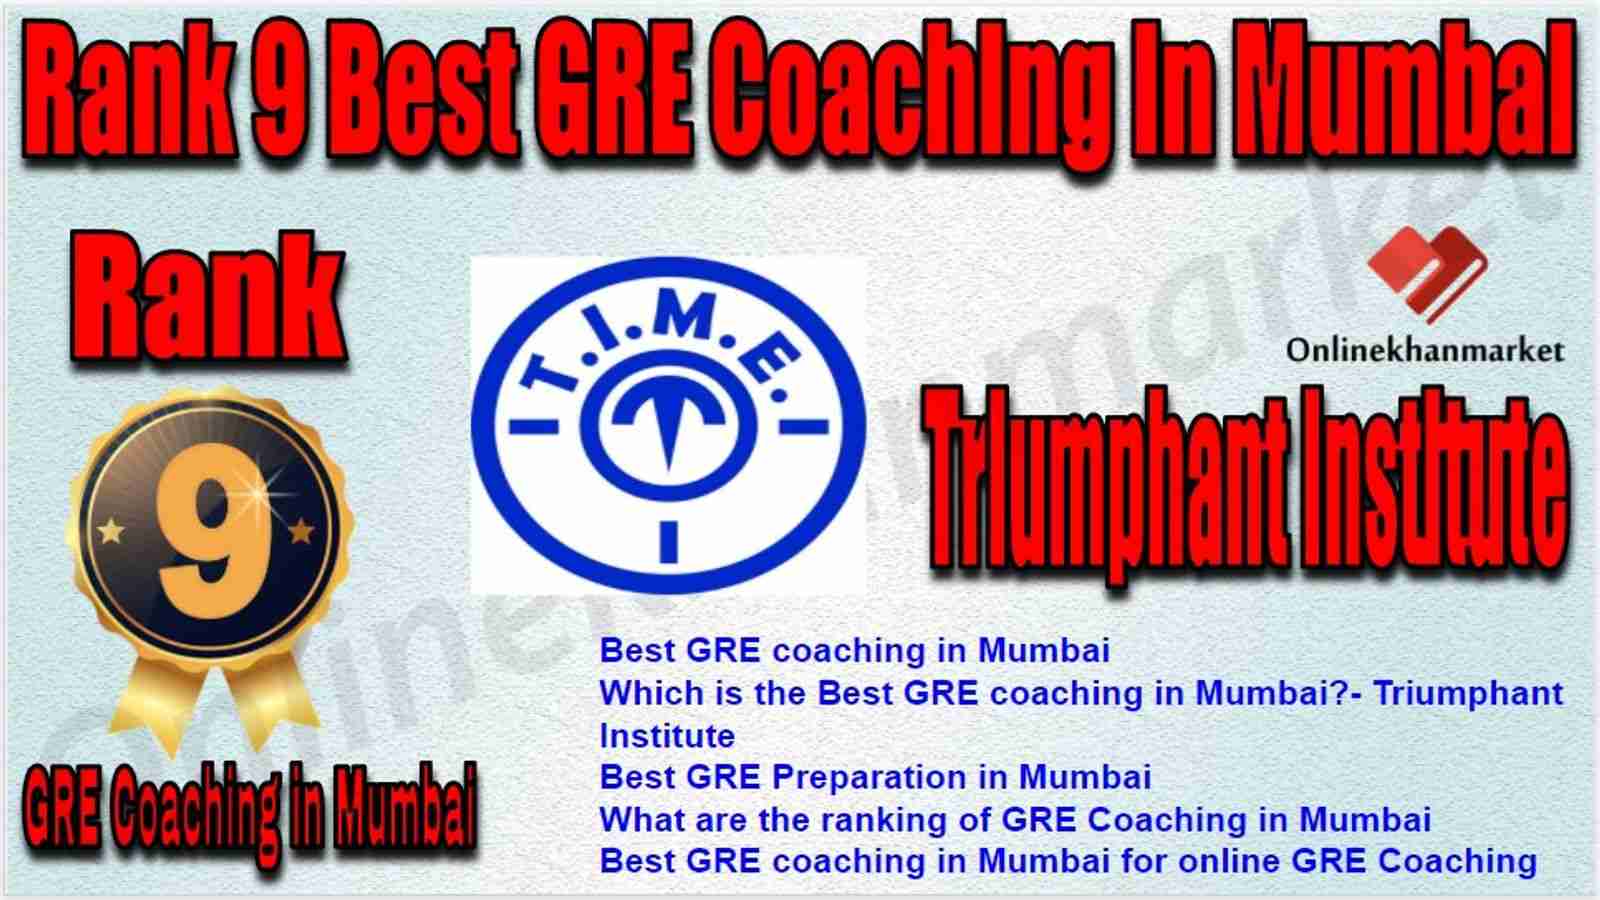 Rank 9 Best GRE Coaching in Mumbai